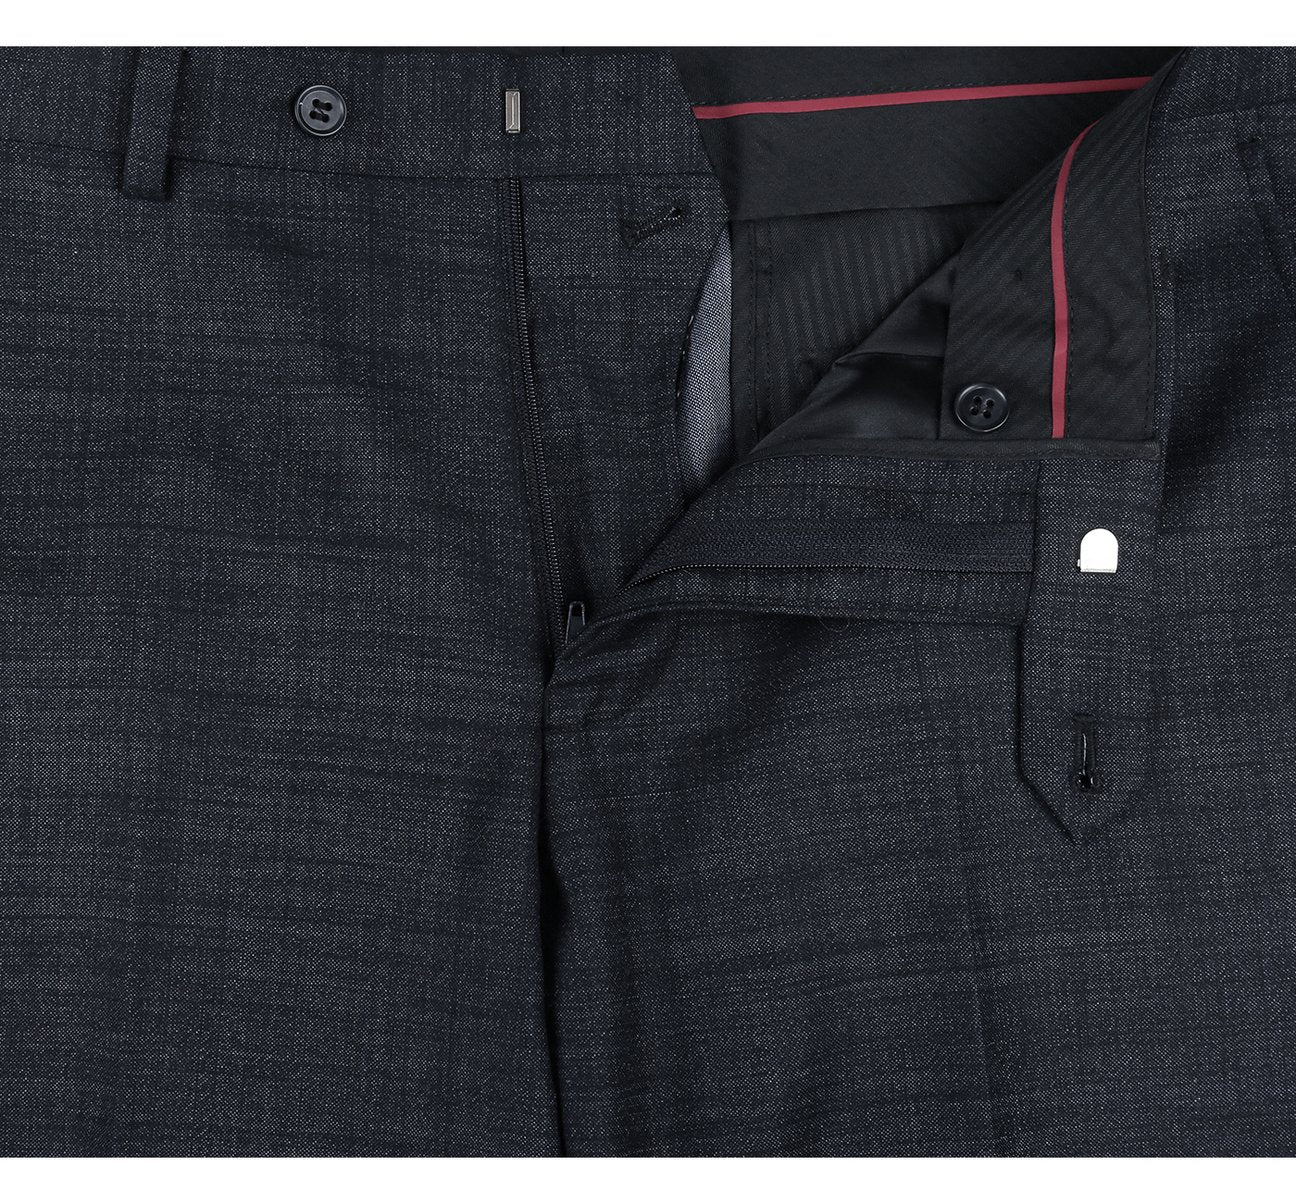 RENOIR Two Piece Slim Fit Wool Blend Suit 558-2